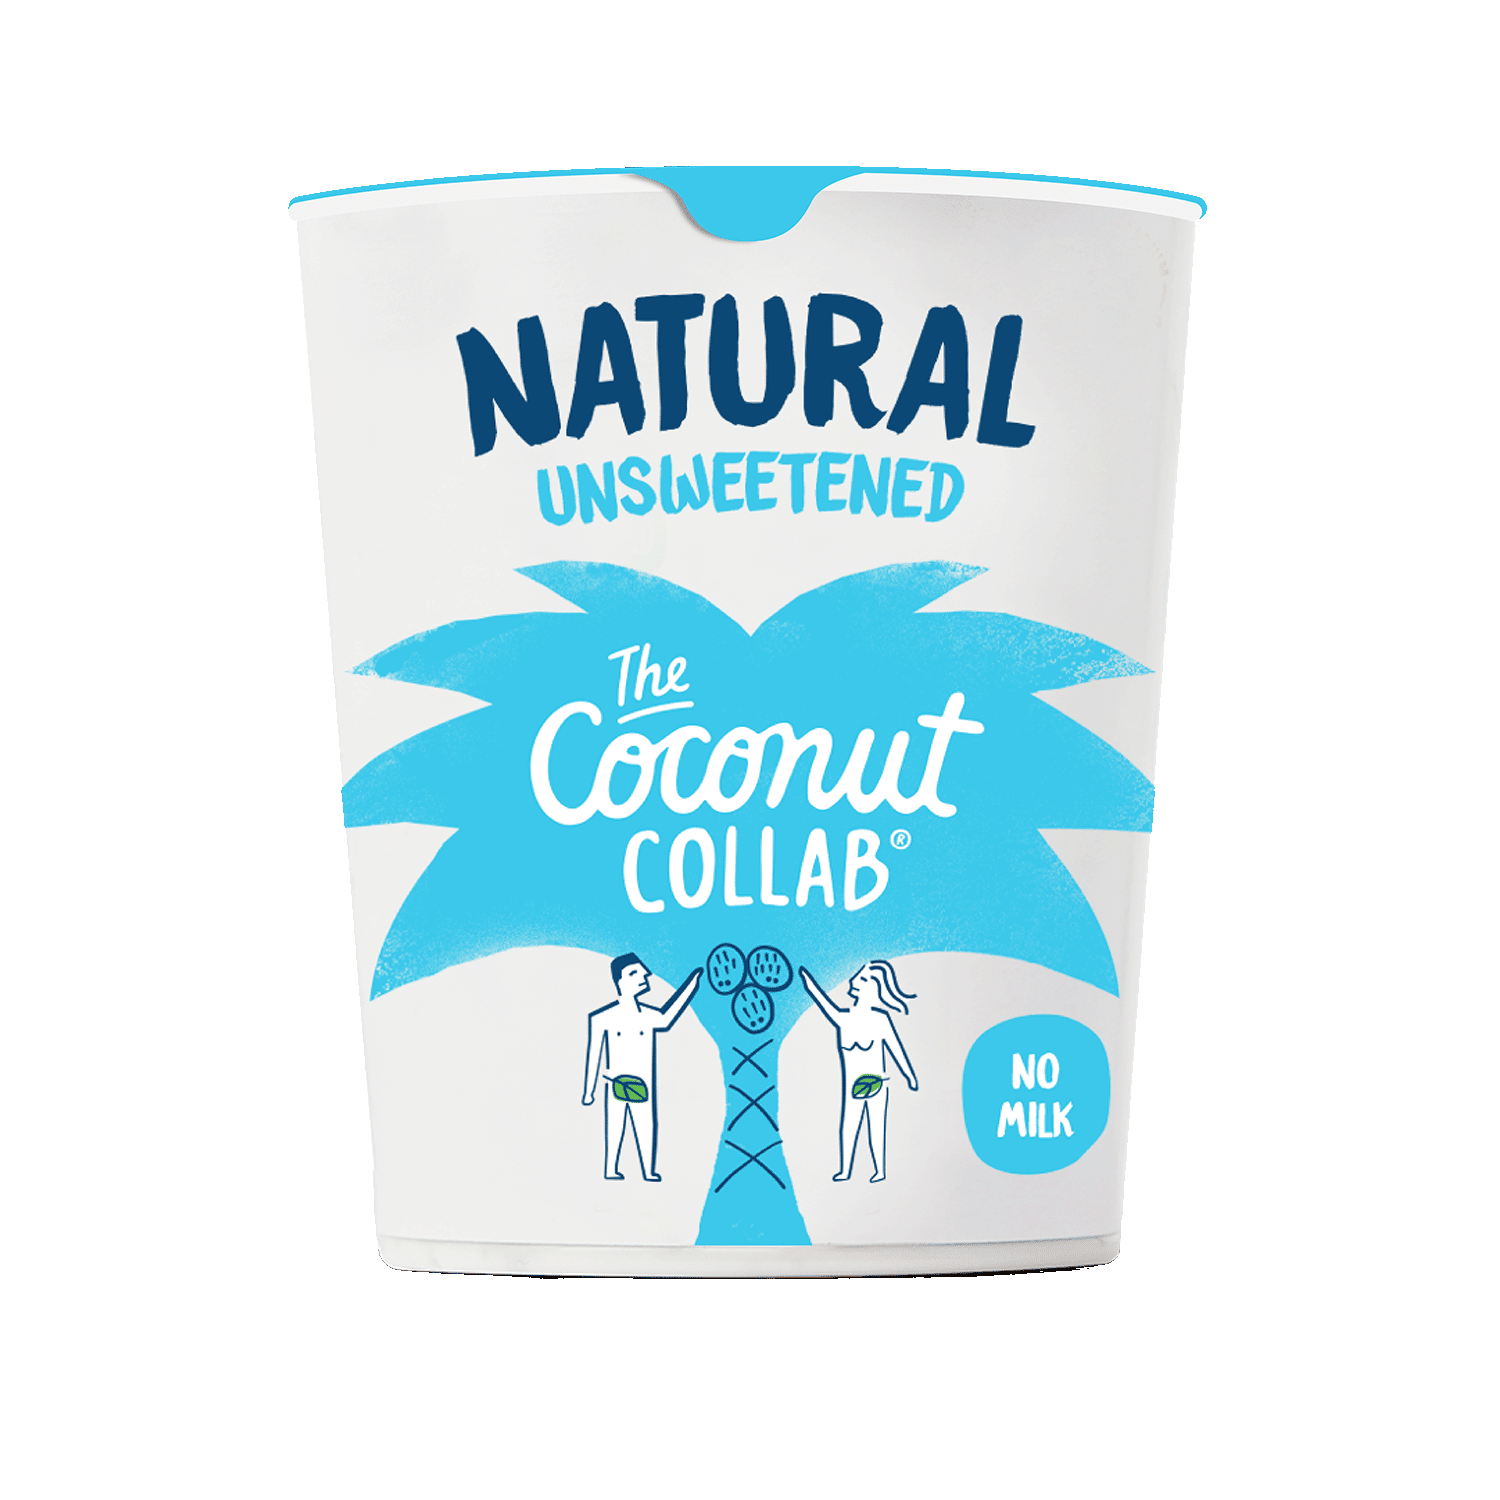 Kokoszubereitung Natur, 350g